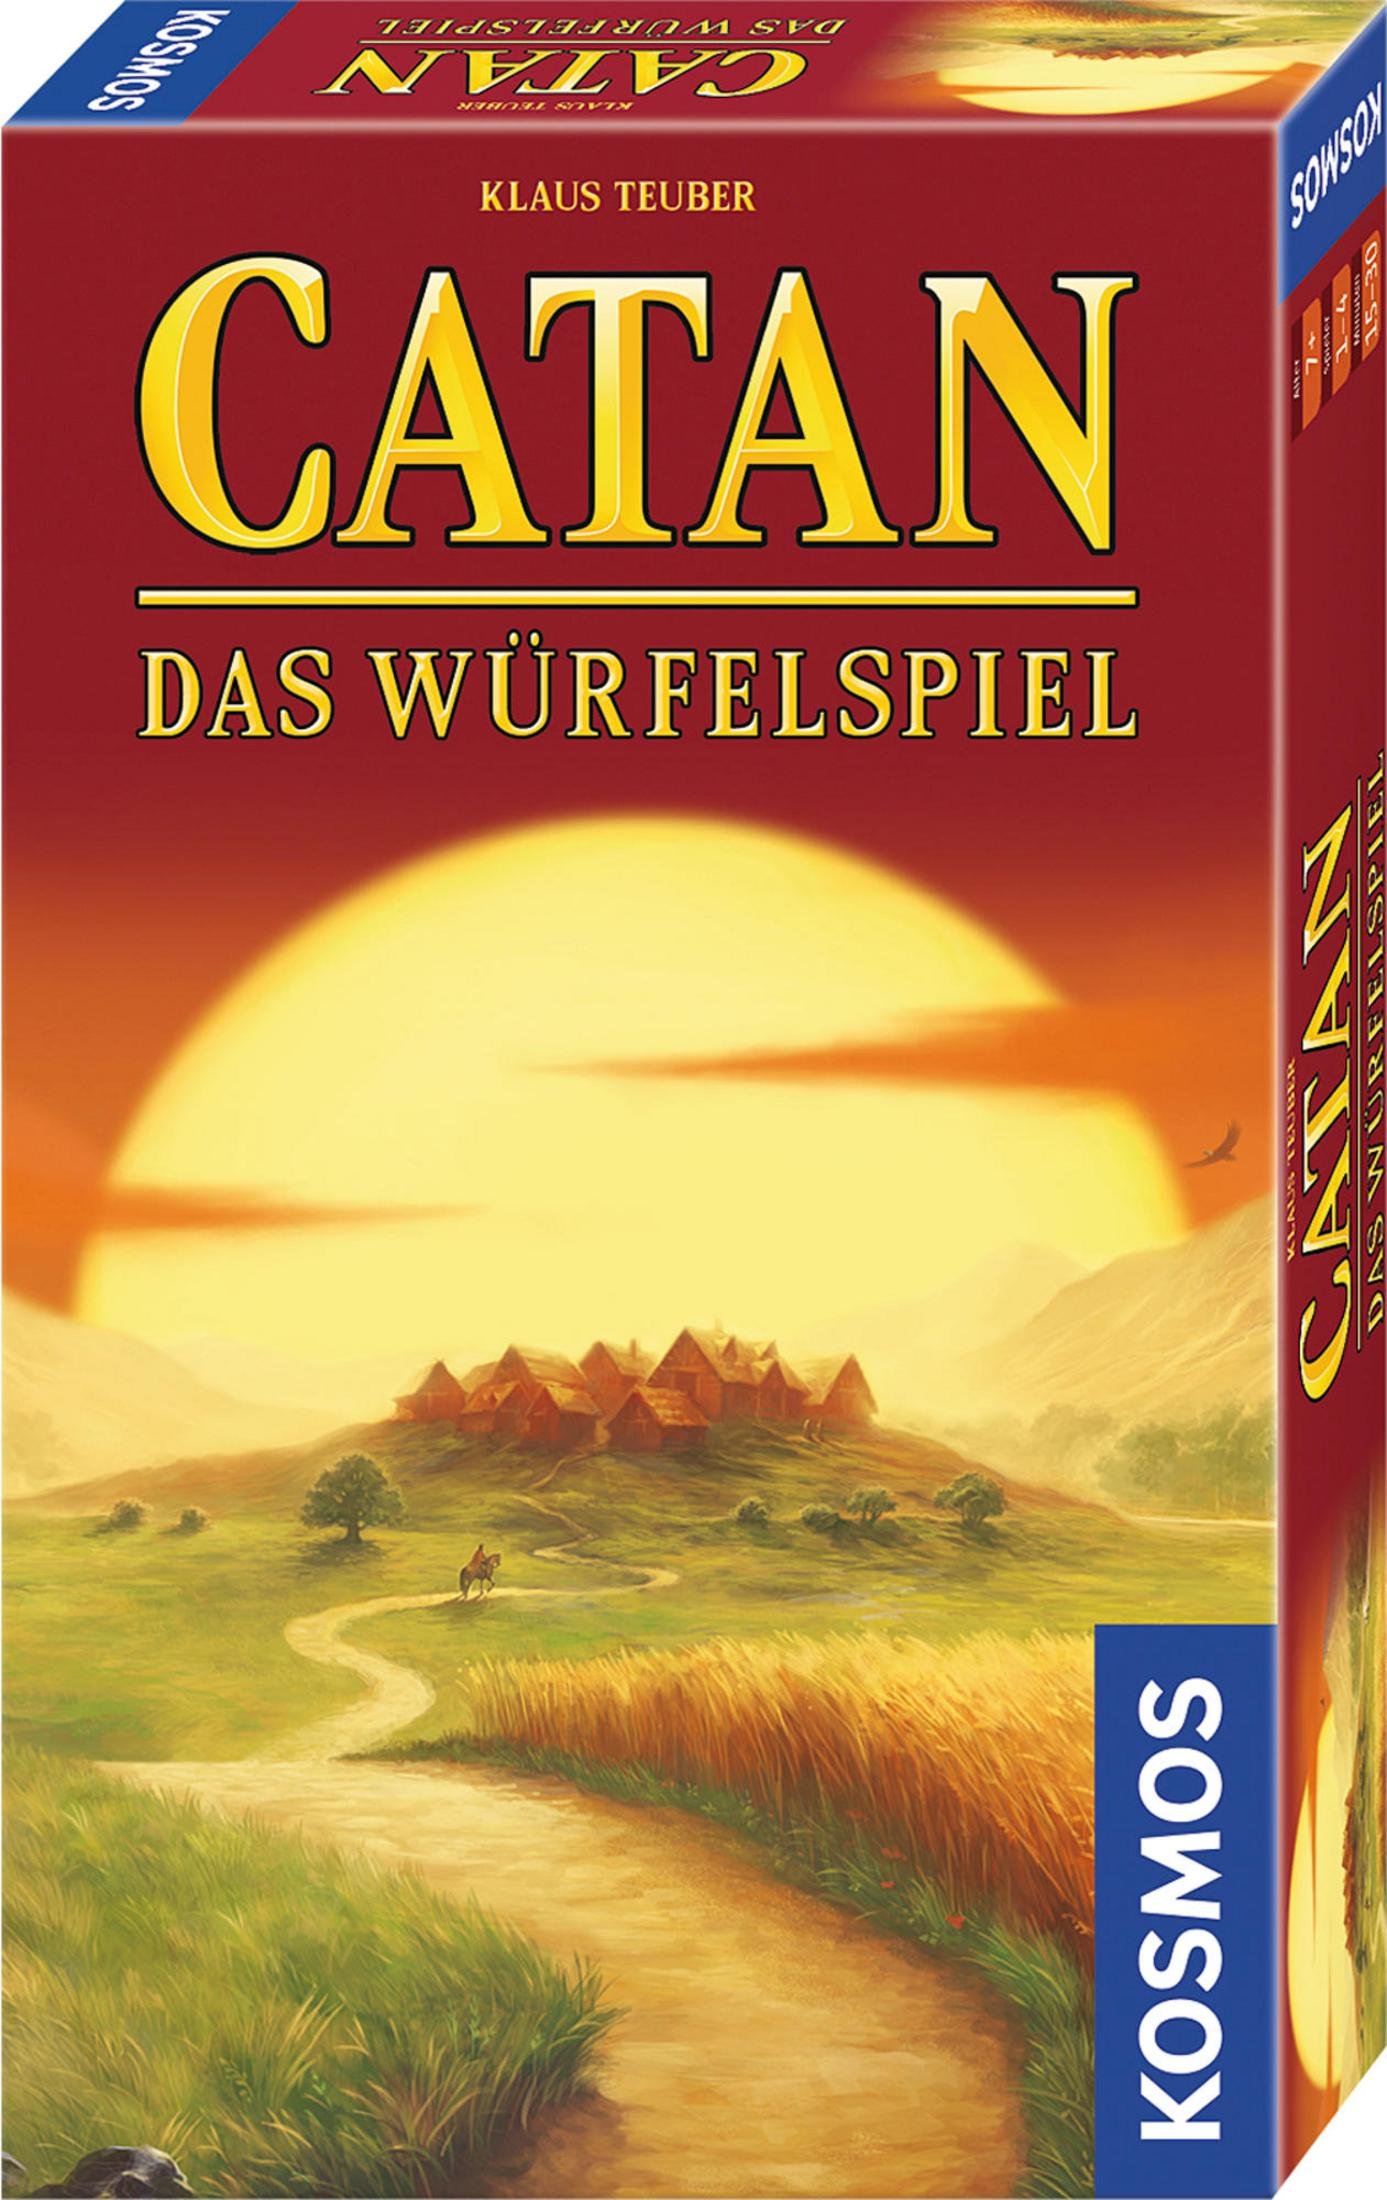 CATAN KOSMOS SIEDLER WÜRFELSPIEL 699093 Würfelspiel VON